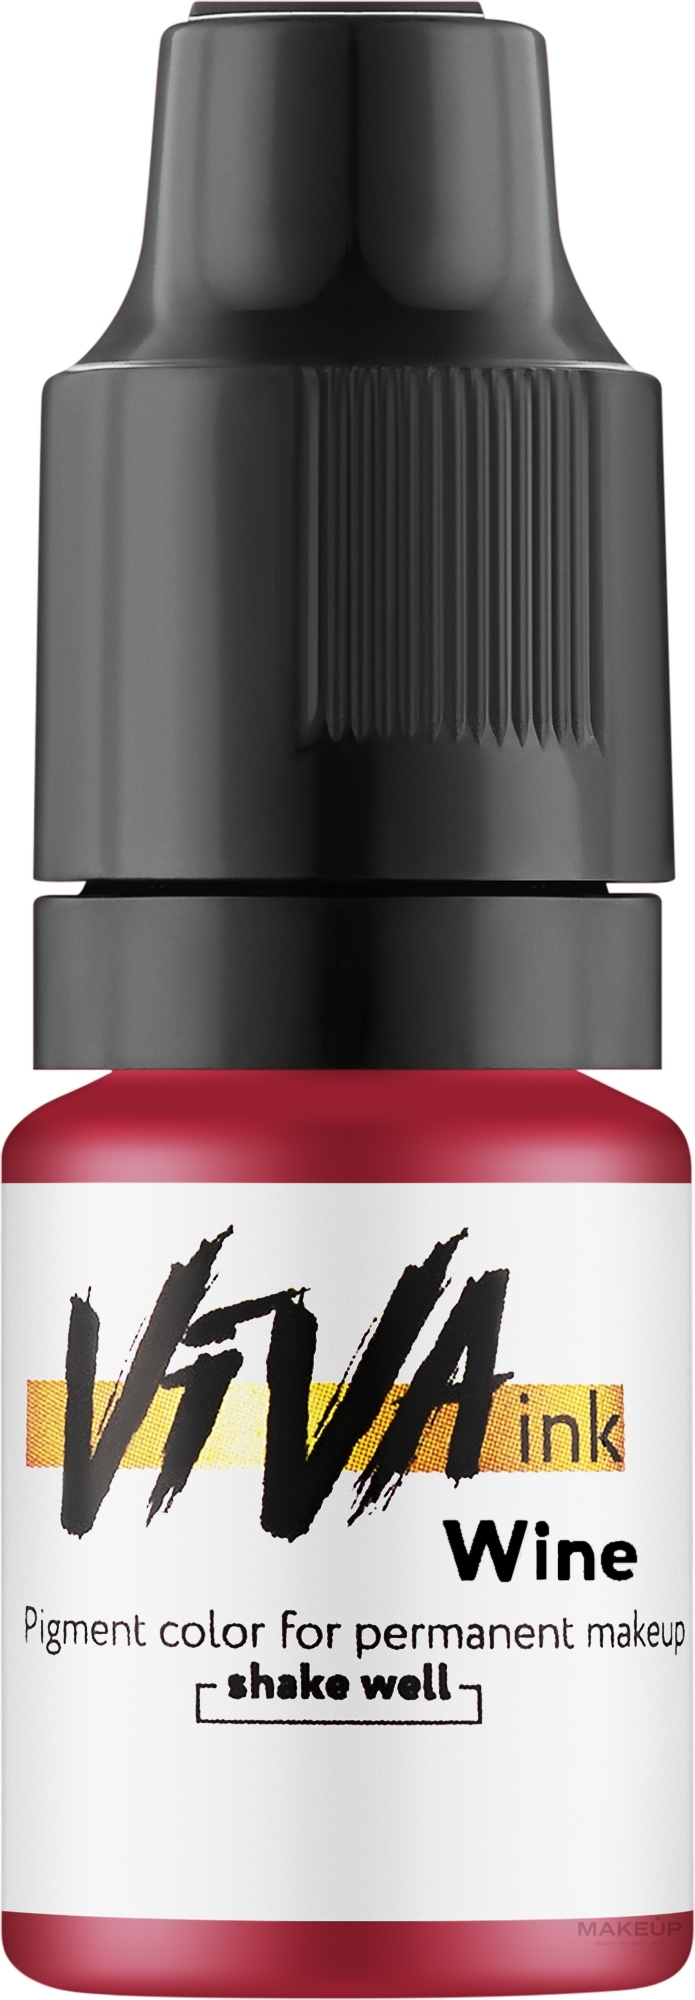 Viva ink Lips Wine - Пігмент для перманентного макіяжу губ, 6 мл — фото 6ml